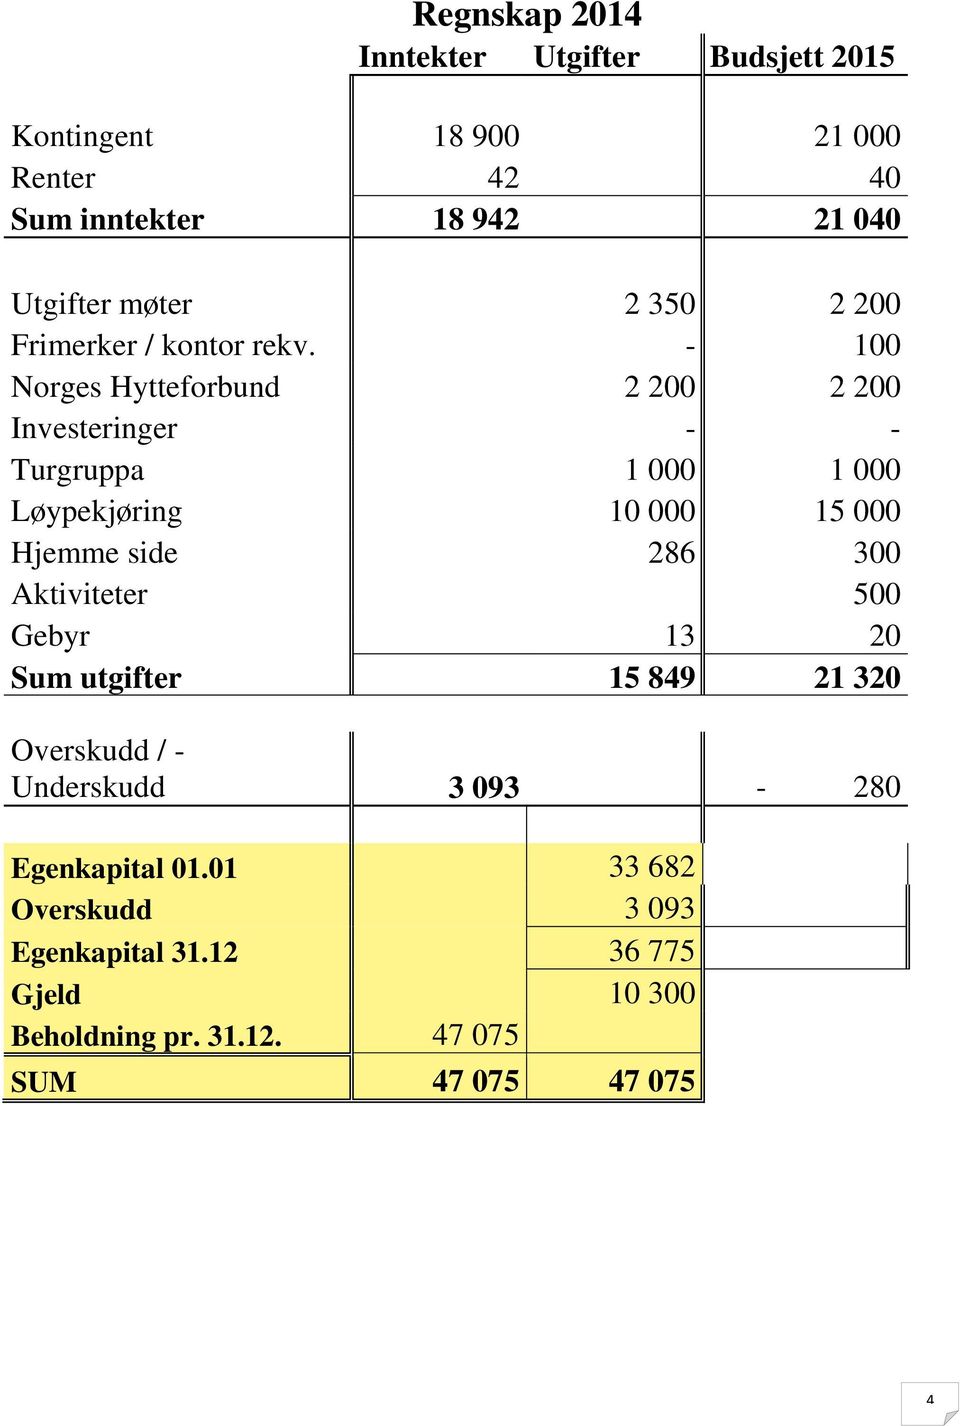 - 100 Norges Hytteforbund 2 200 2 200 Investeringer - - Turgruppa 1 000 1 000 Løypekjøring 10 000 15 000 Hjemme side 286 300